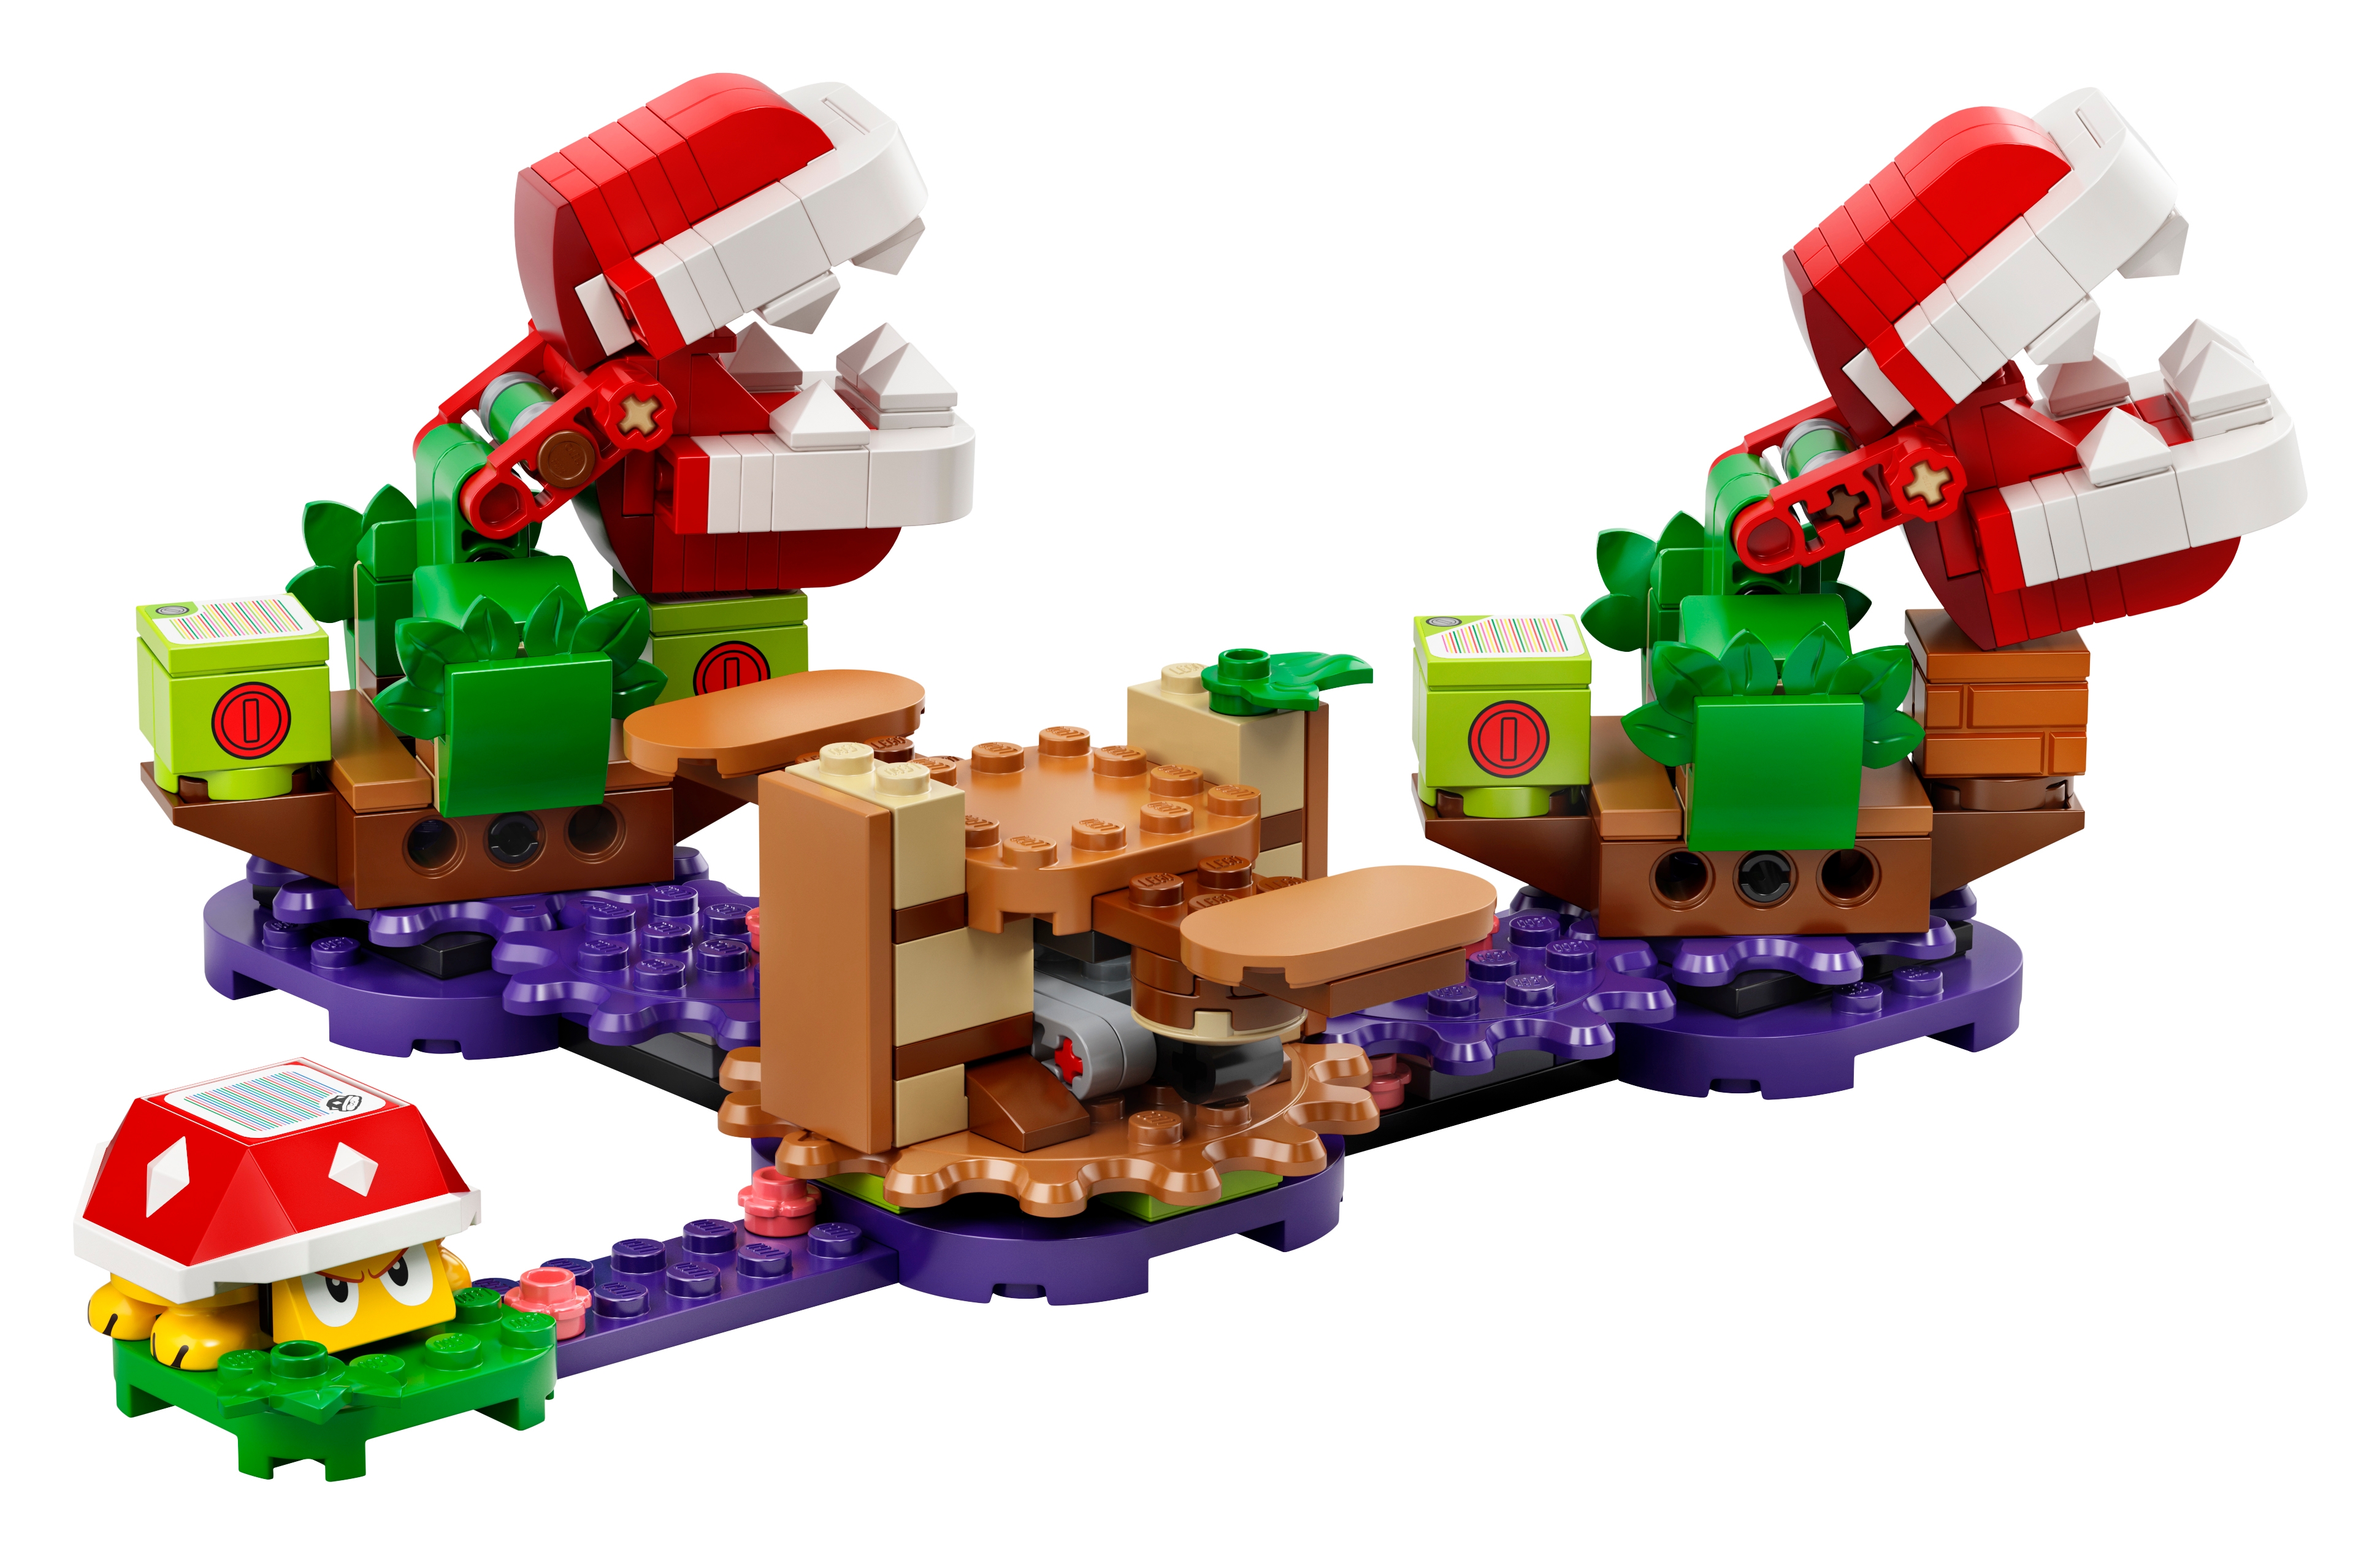 LEGO et Nintendo annoncent un set Plante Piranha très abordable